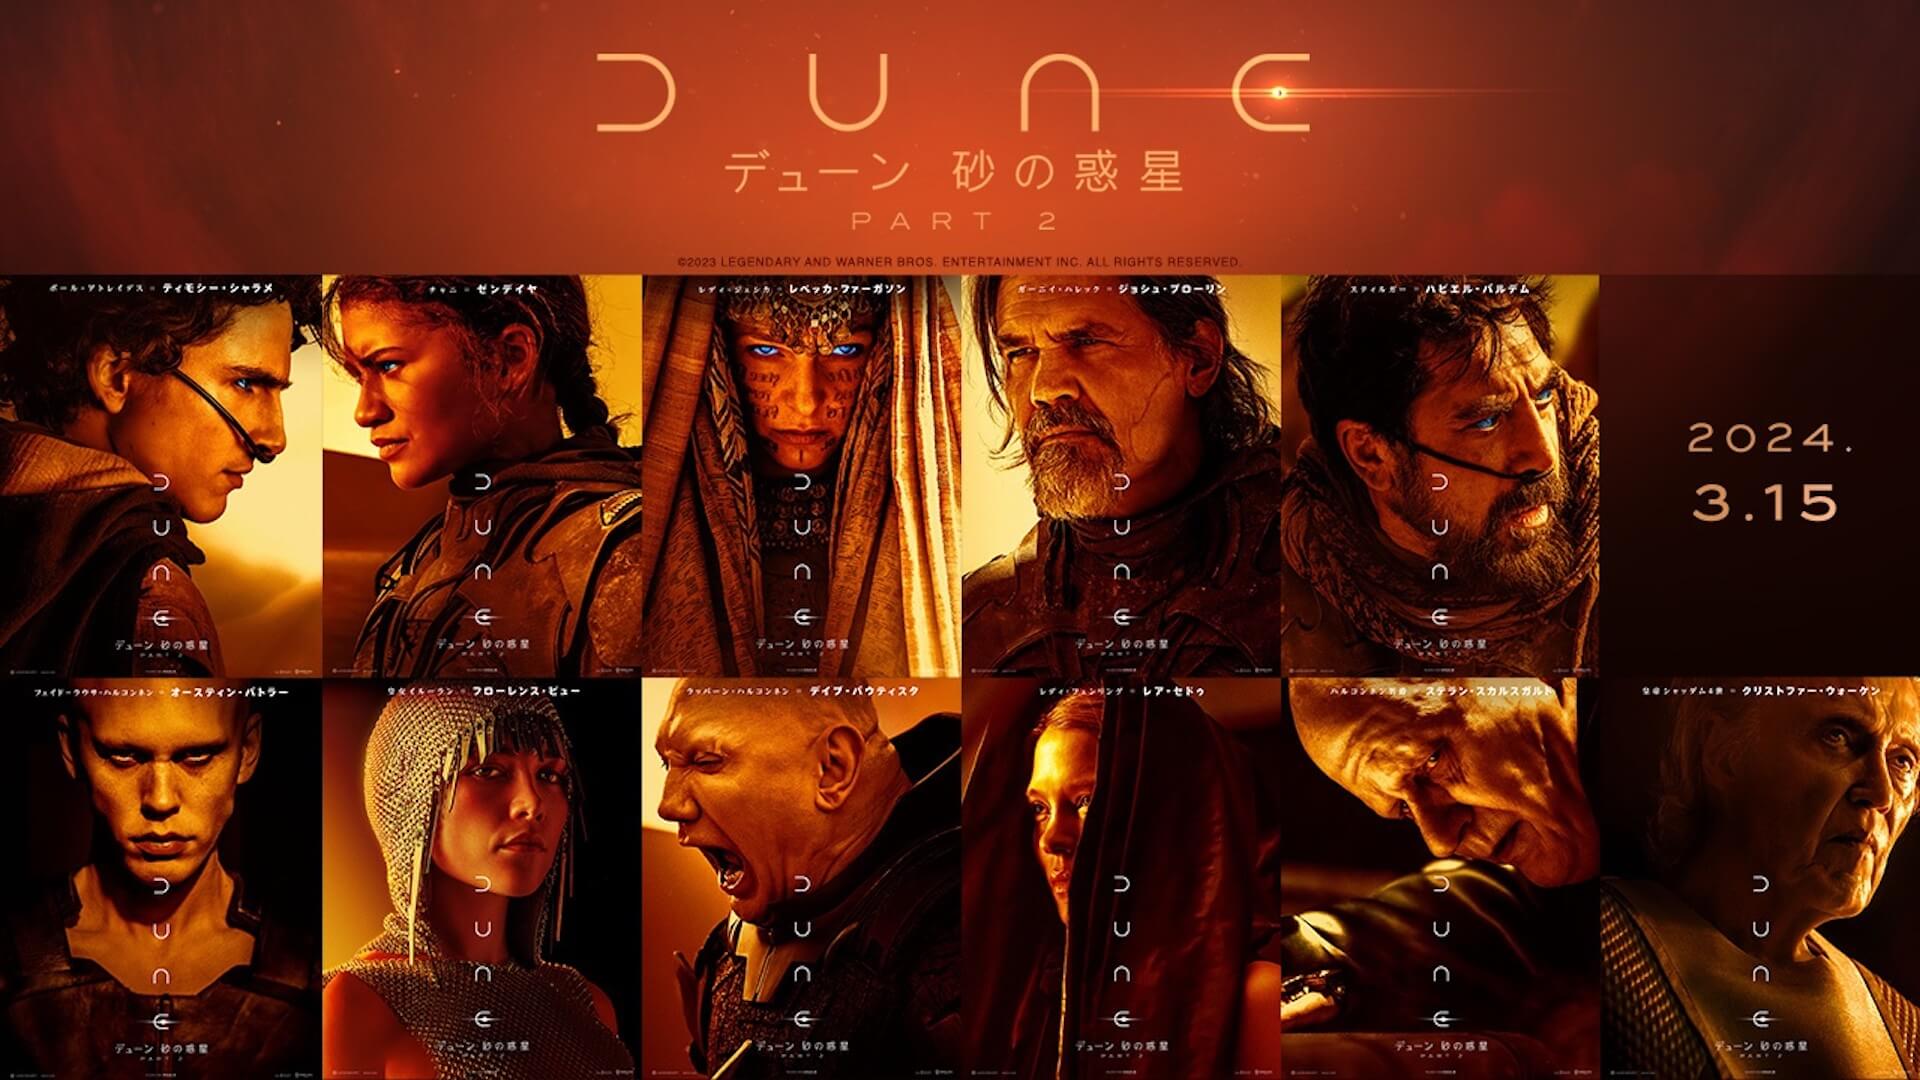 『デューン 砂の惑星PART2』最新予告映像が公開｜新登場キャラクター含む総勢11人のポスターが一挙解禁 film231213-dune-movie-01